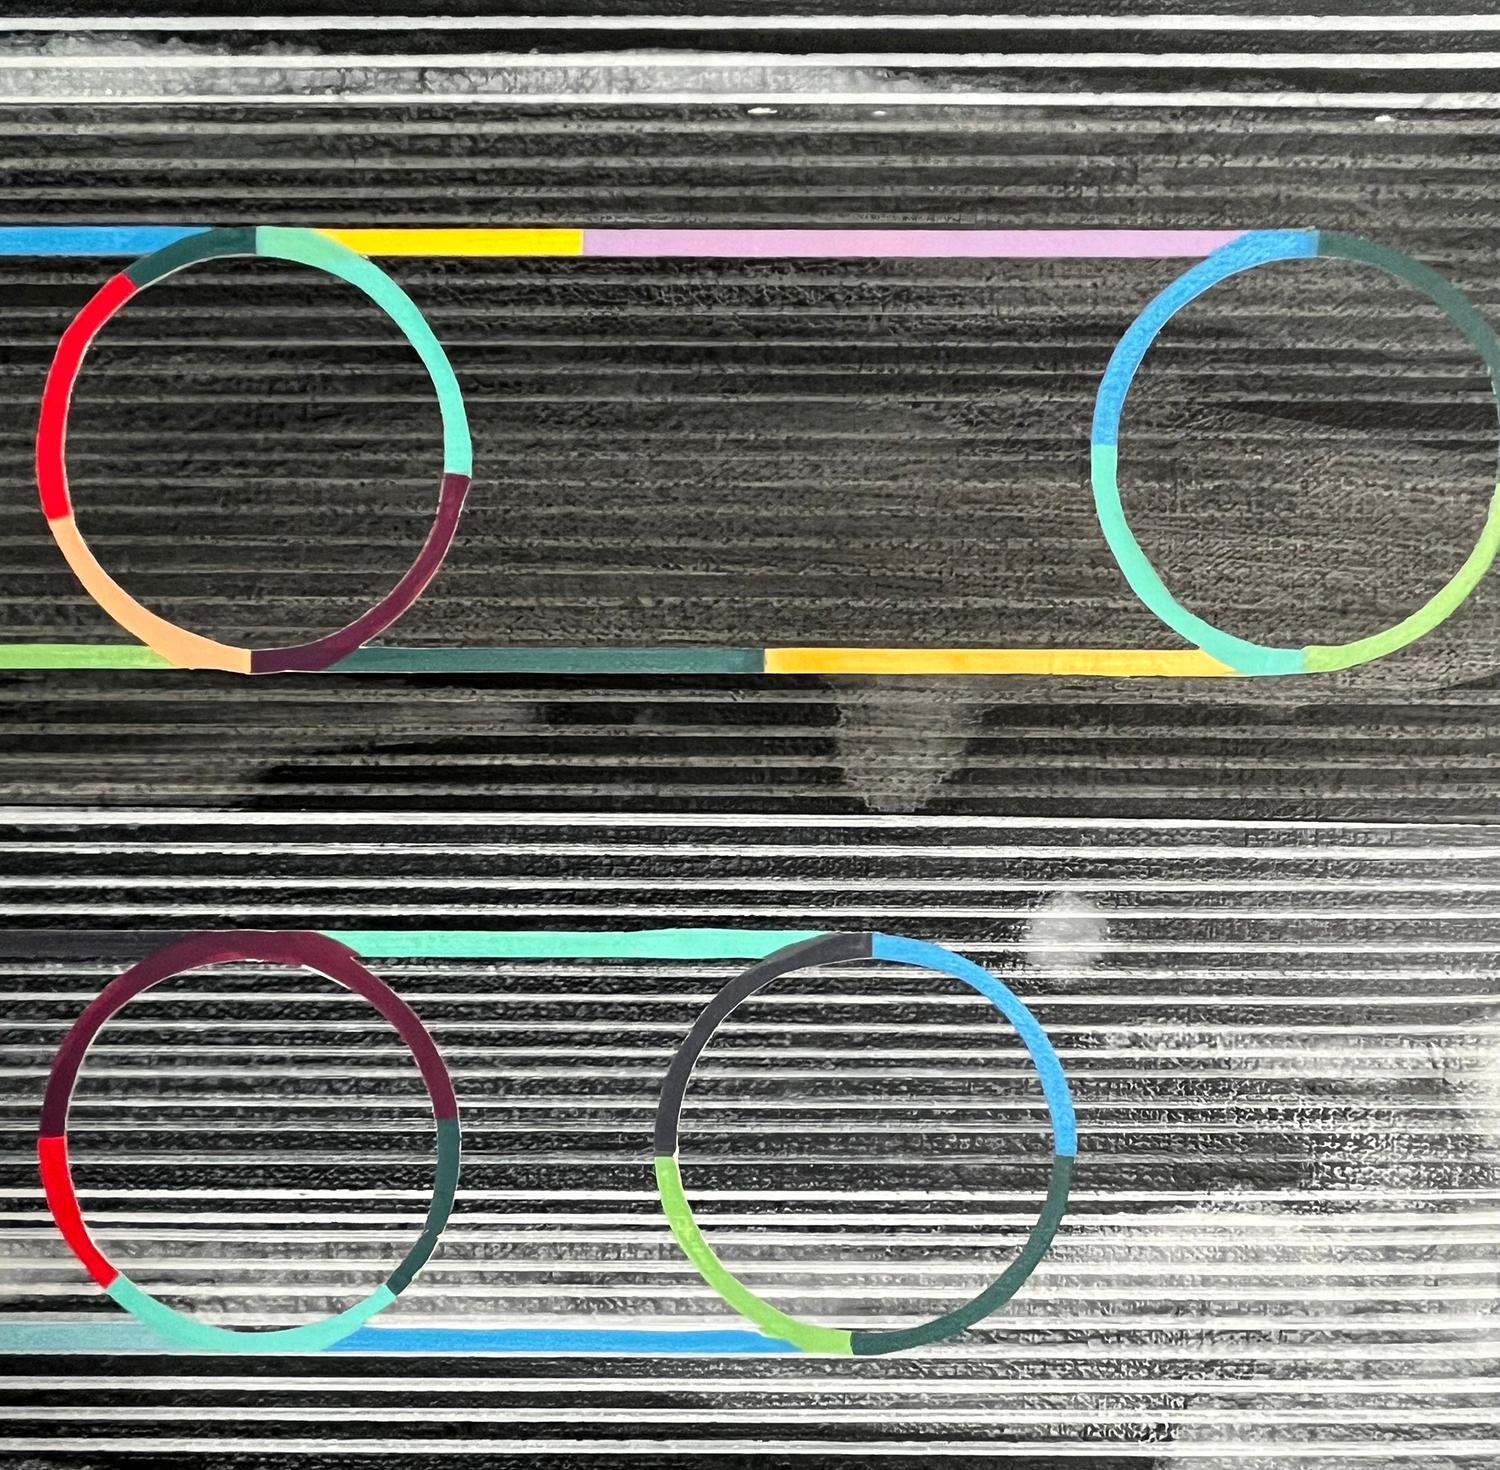 <p>Commentaires de l'artiste<br>Des cercles colorés flottent sur un fond monochrome. Les marques linéaires représentent une accélération de l'espace, créant l'illusion d'une lumière étirée. La composition engage un dialogue entre l'imagination et le